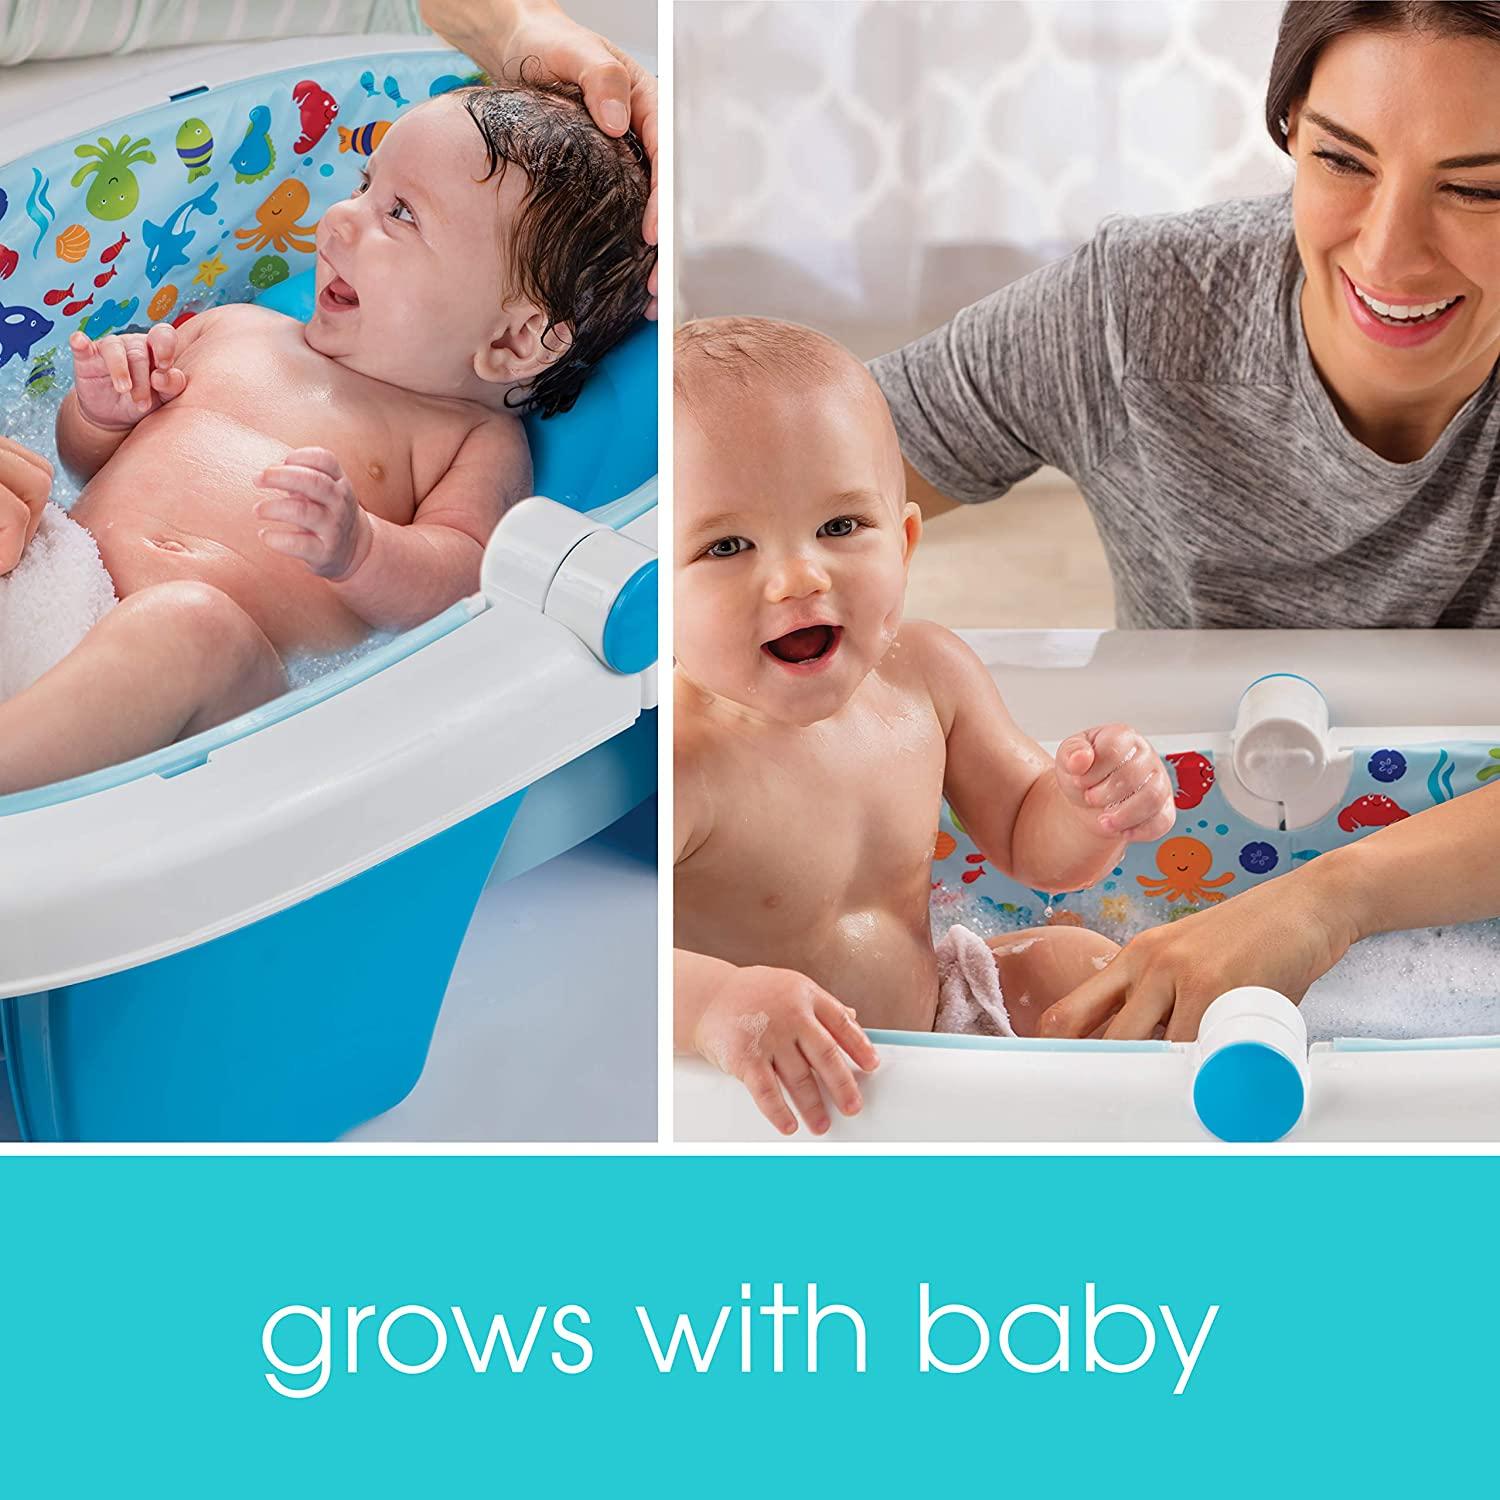 Folding Baby Bath-Portable Baby Bathtub Newborn to Toddler Baby Bath Tub  Green